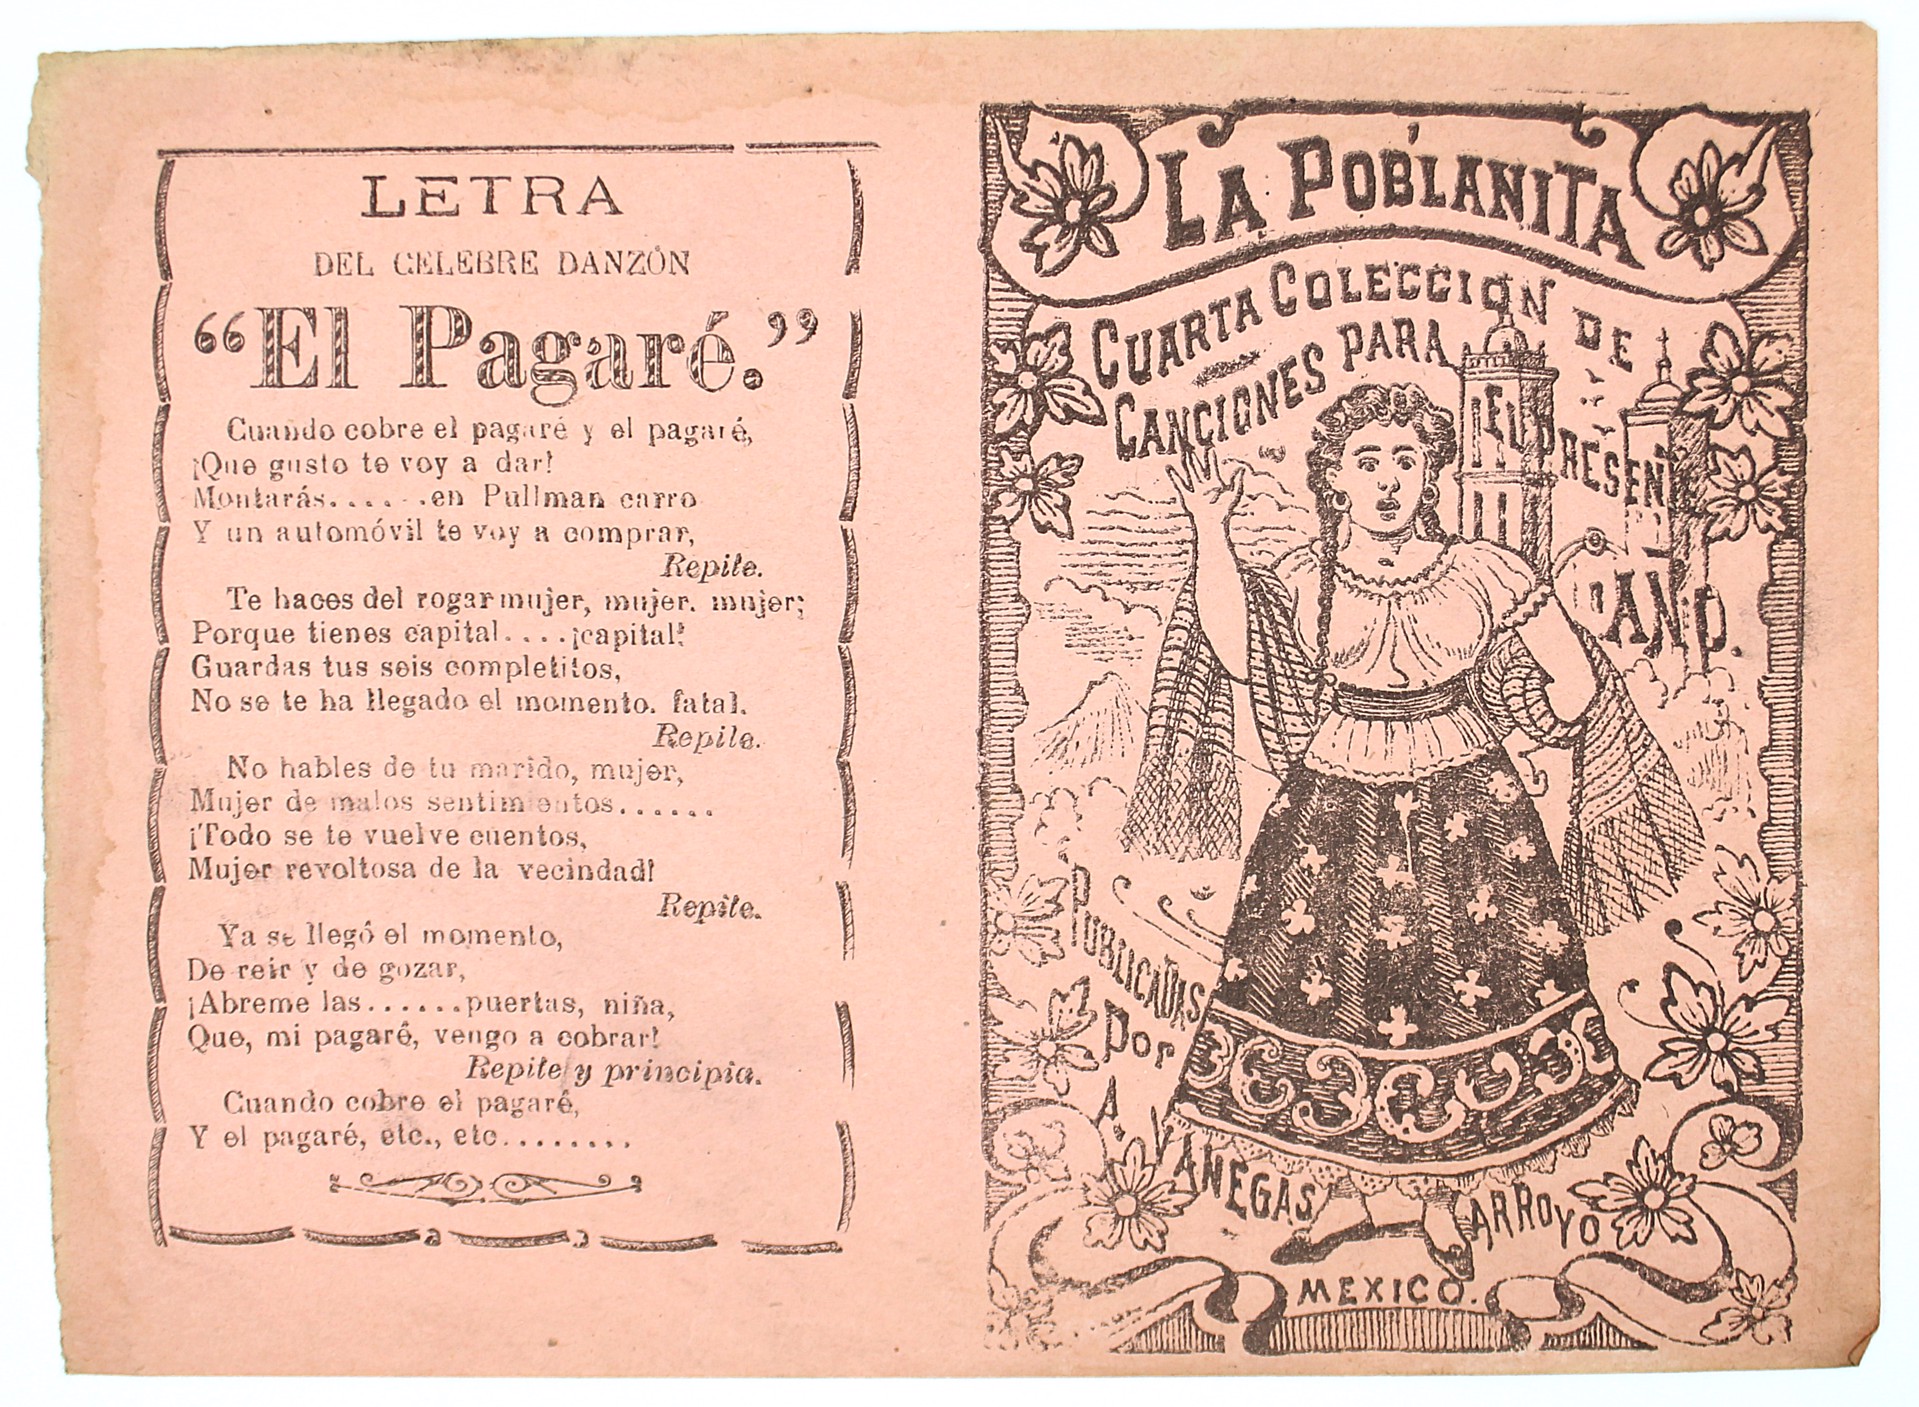 La Poblanita. Cuarta Colección de canciones para el presente ano. by José Guadalupe Posada